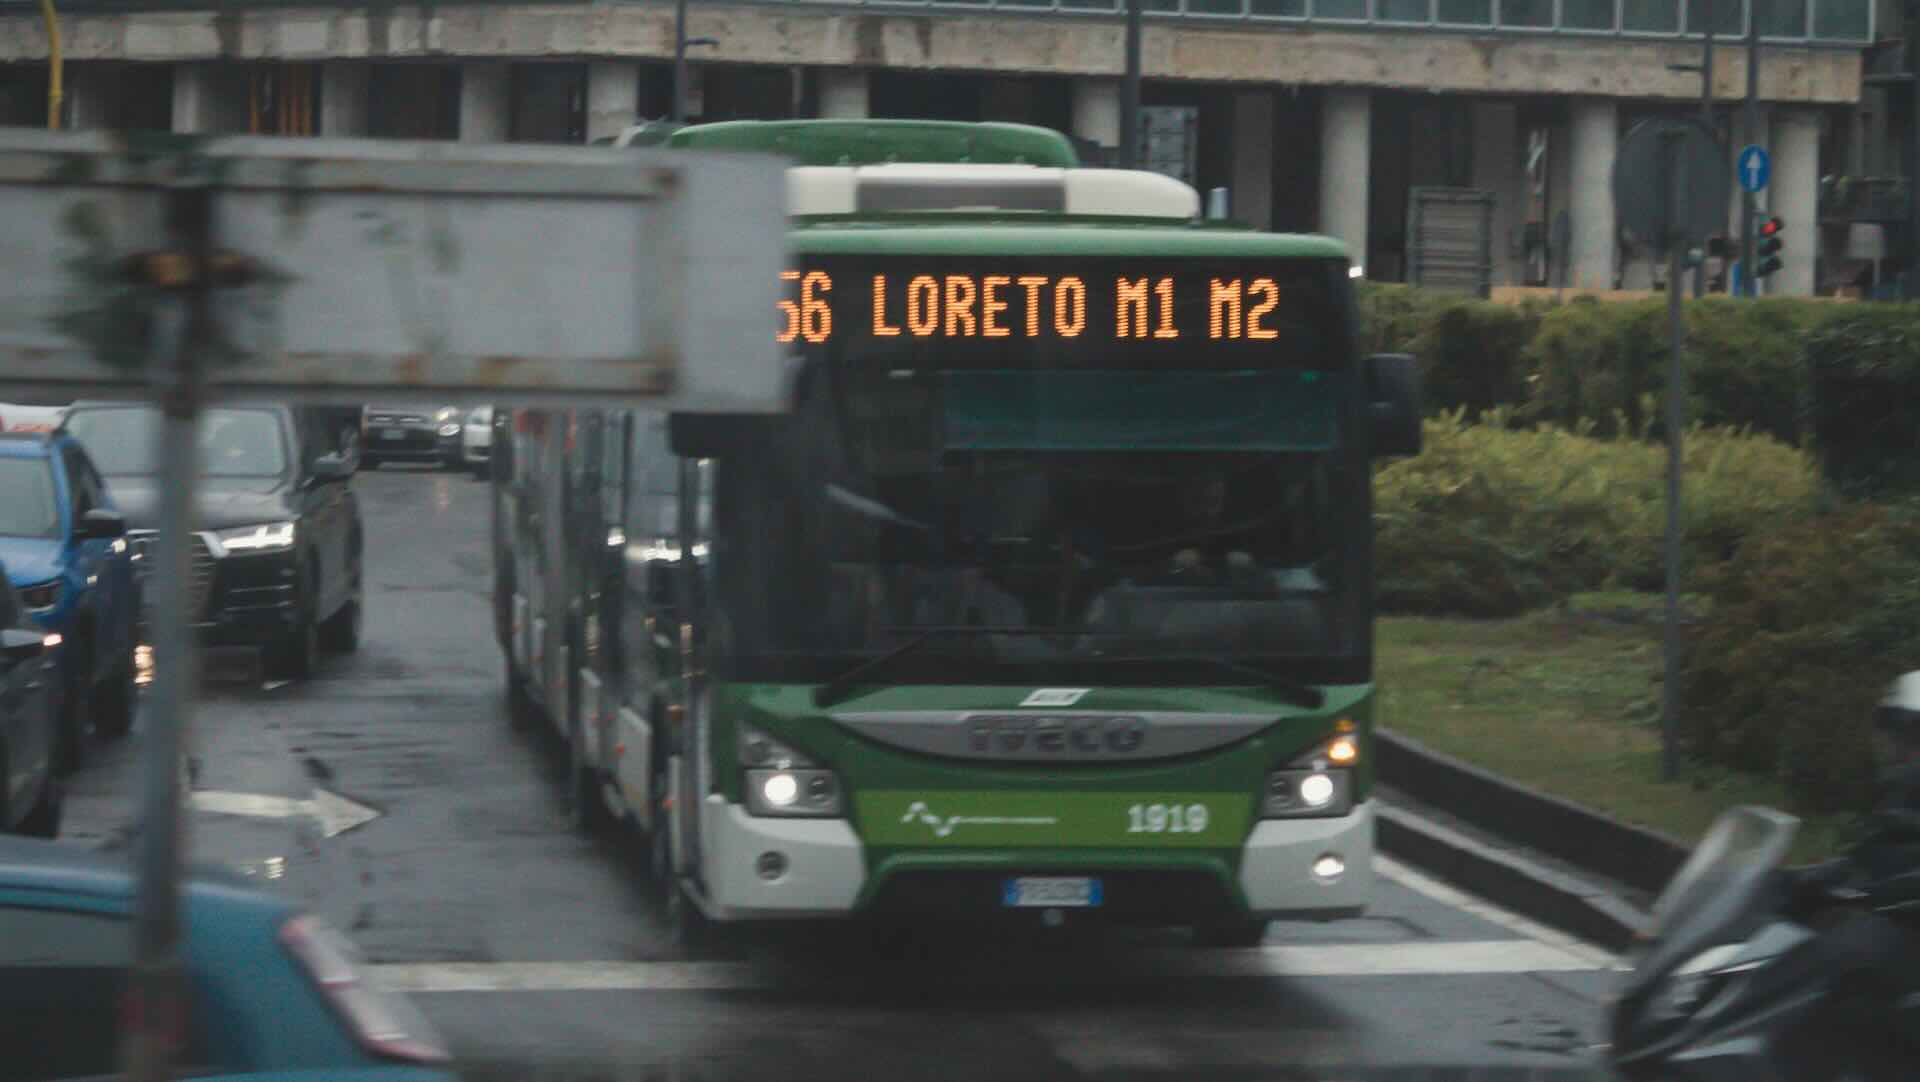 Trasporto mezzi pubblici ChiamaBus Atm, bus a chiamata a Milano